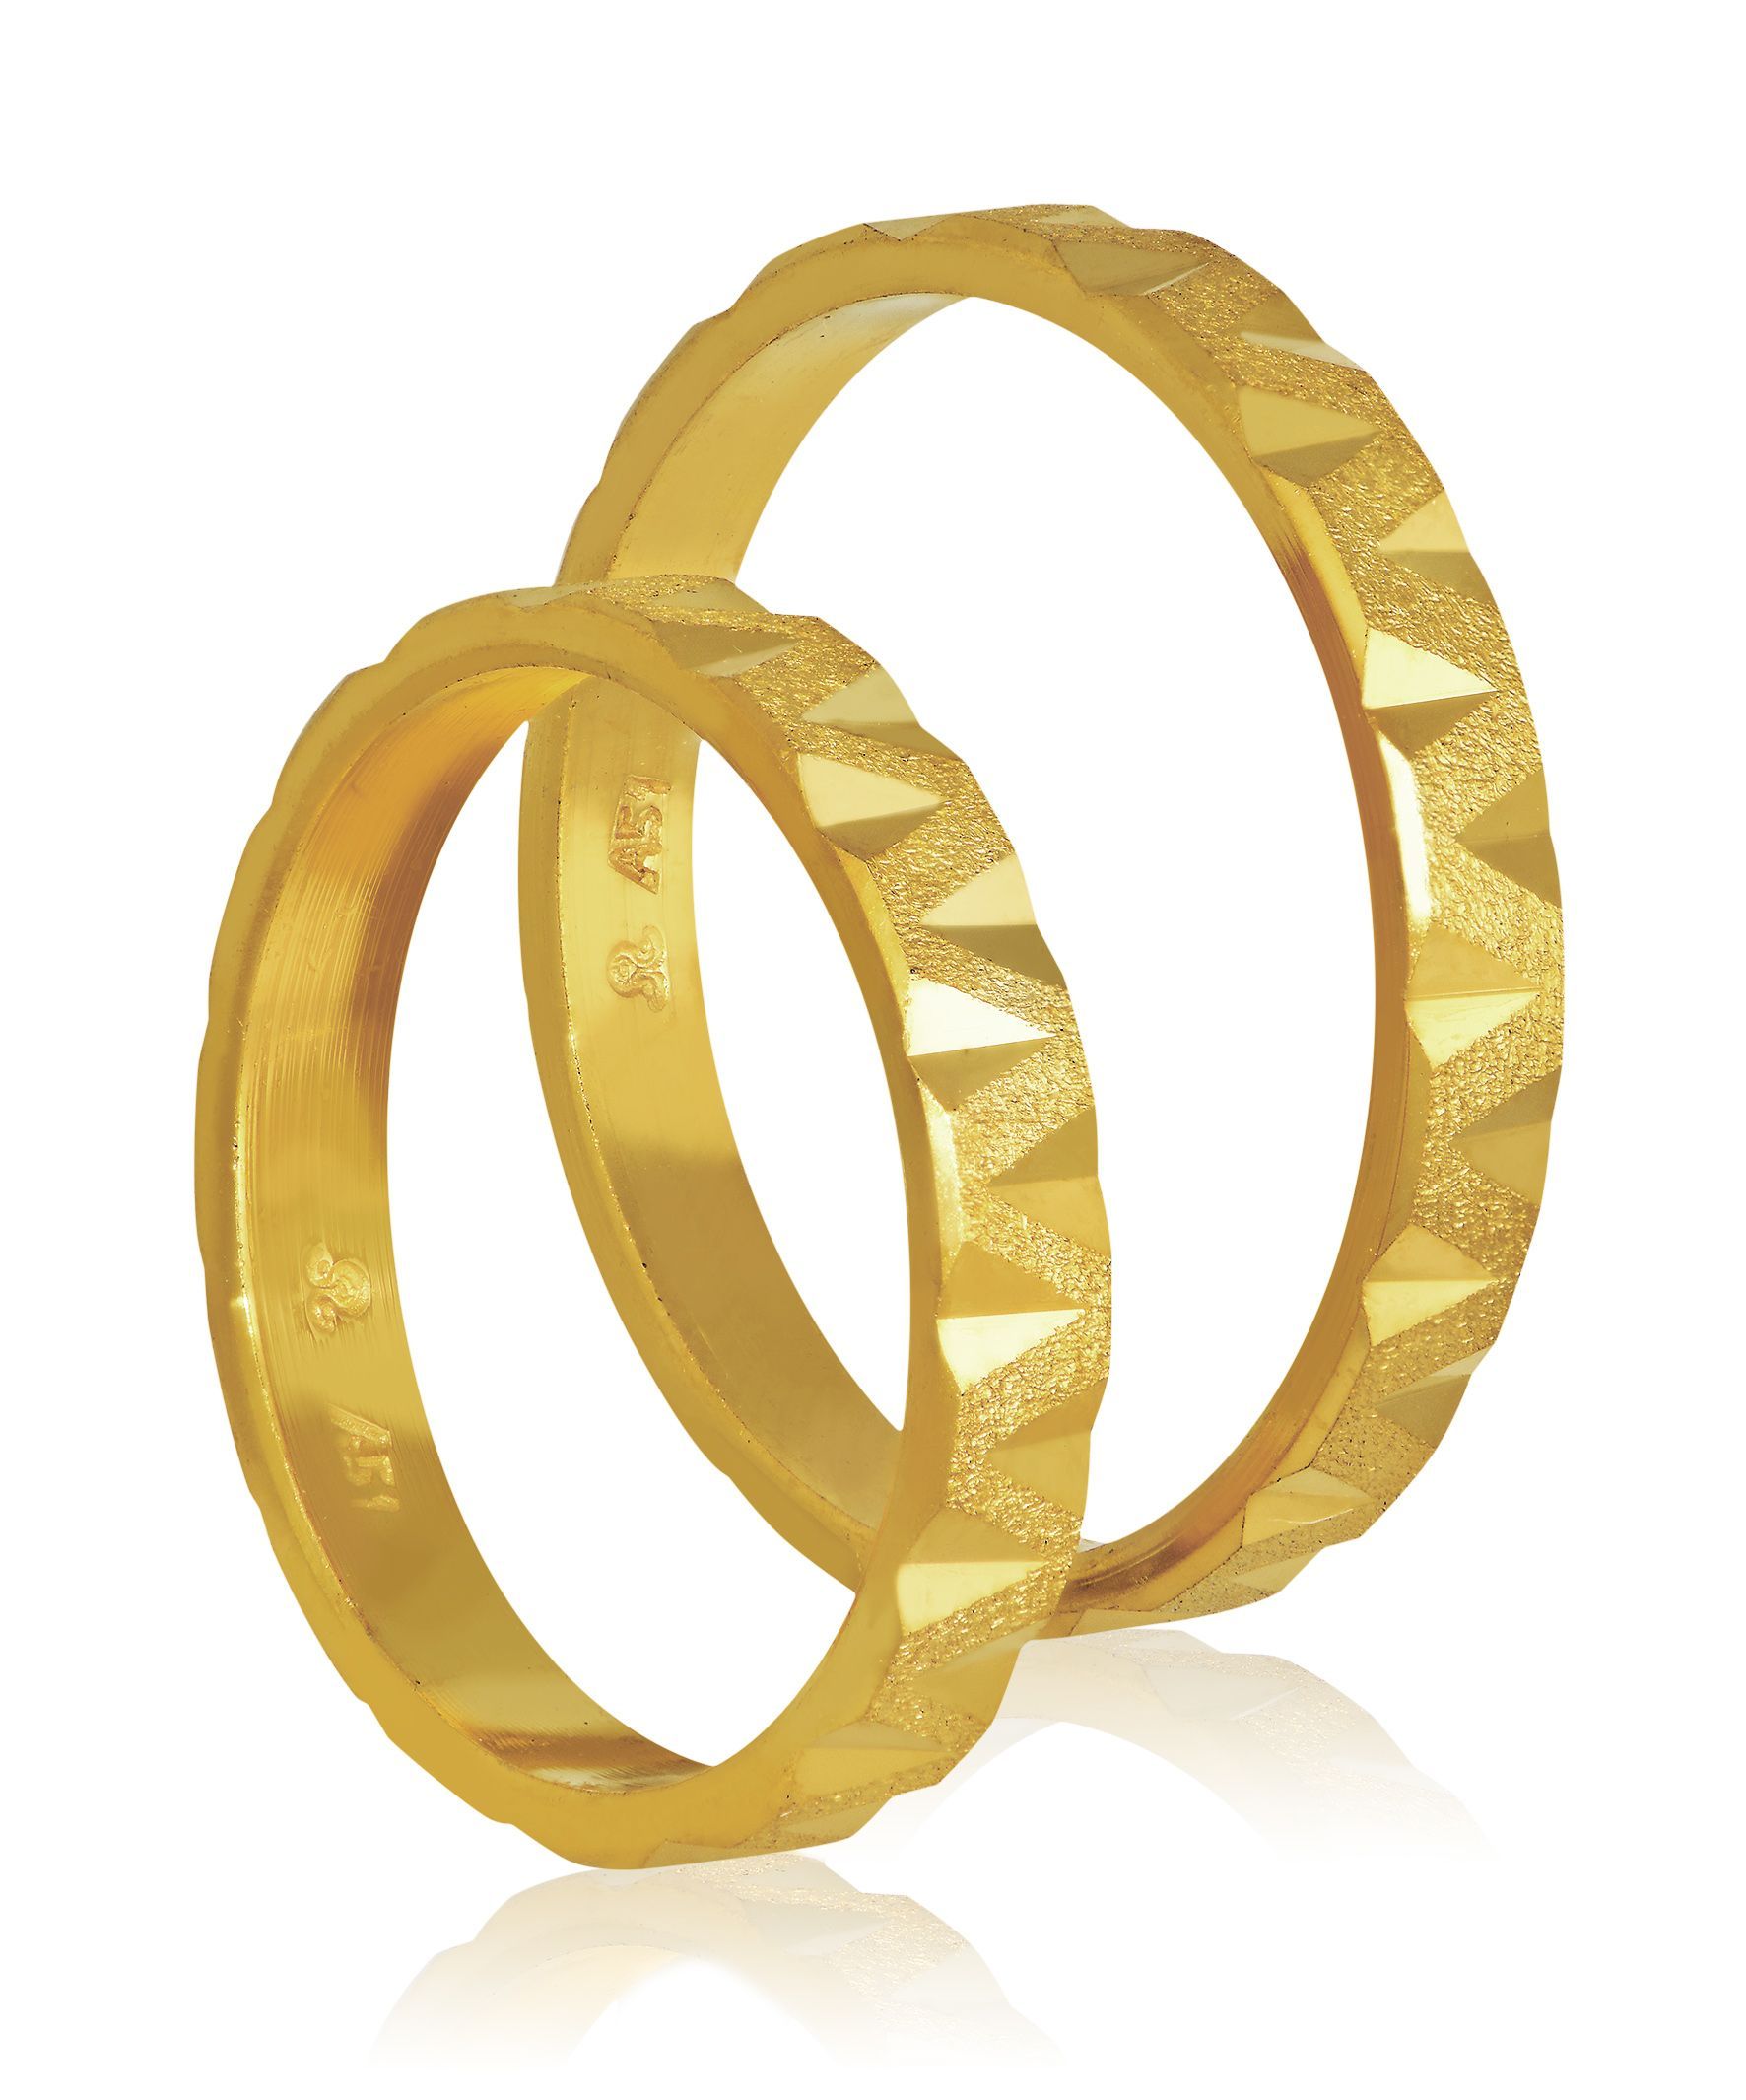 Golden wedding rings 3mm (code 409)